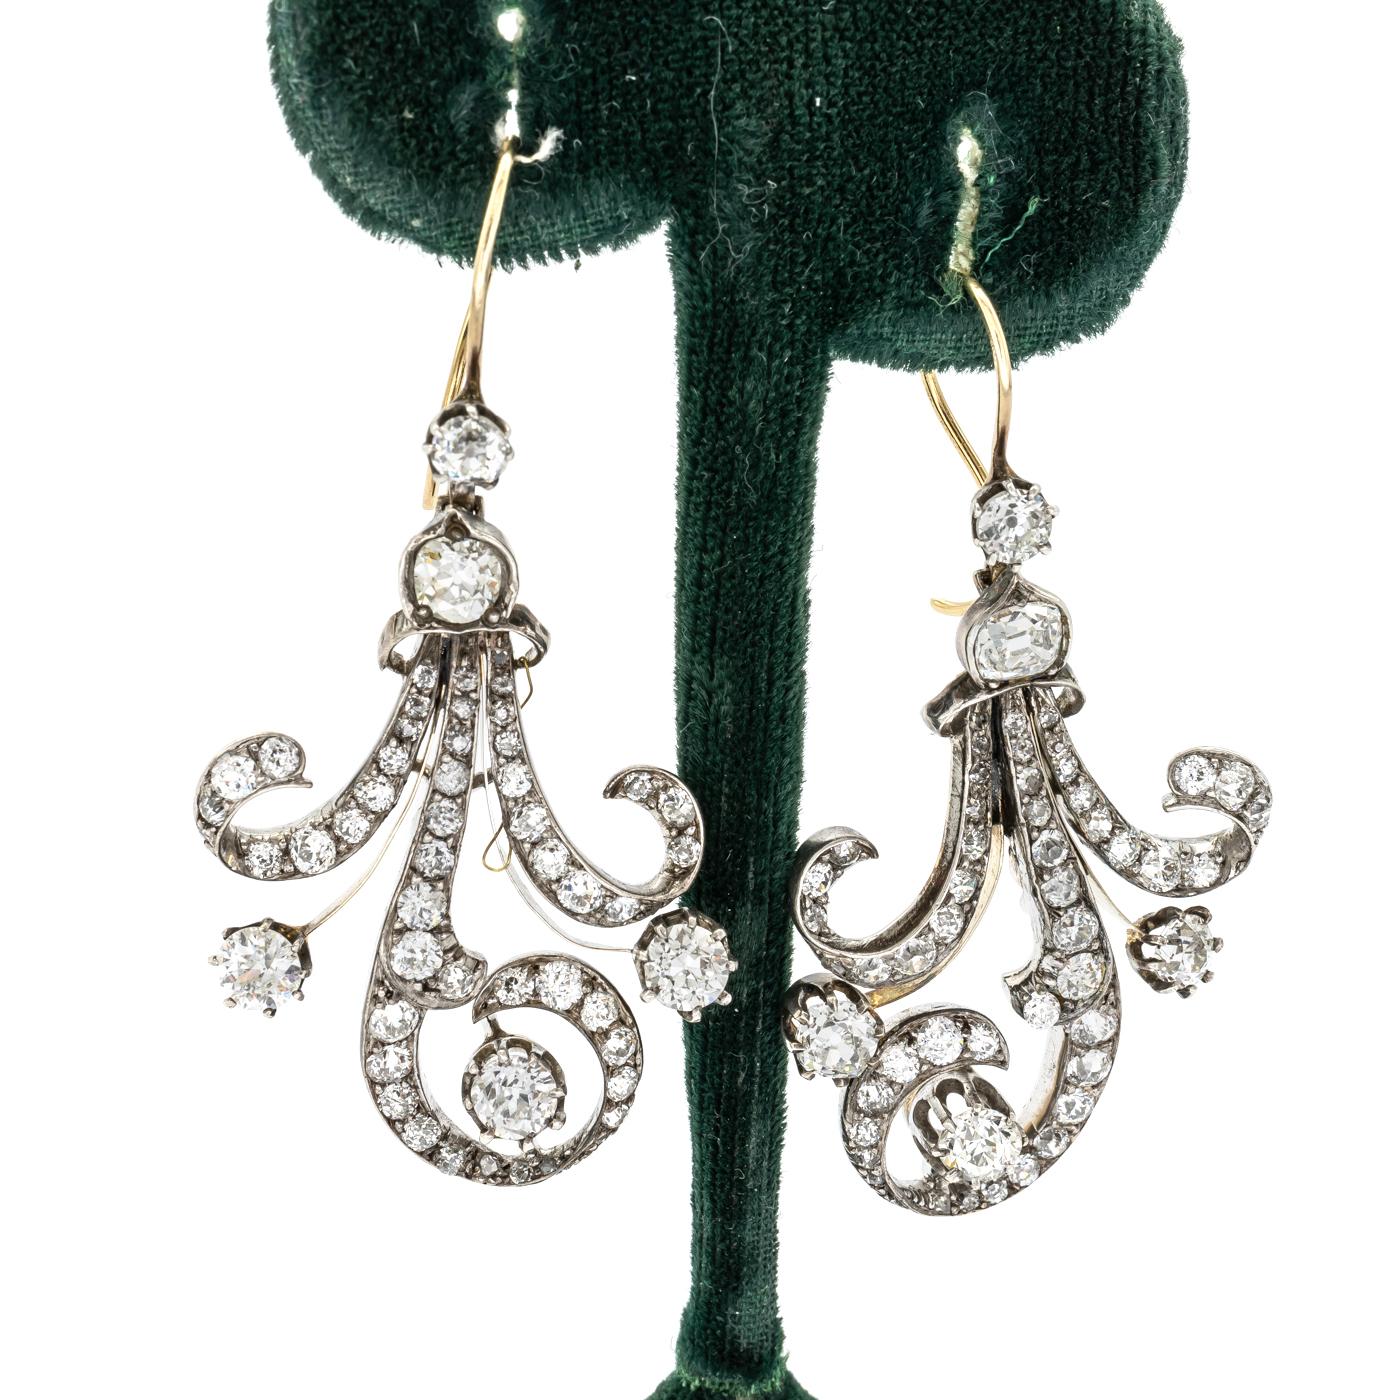 1890s earrings